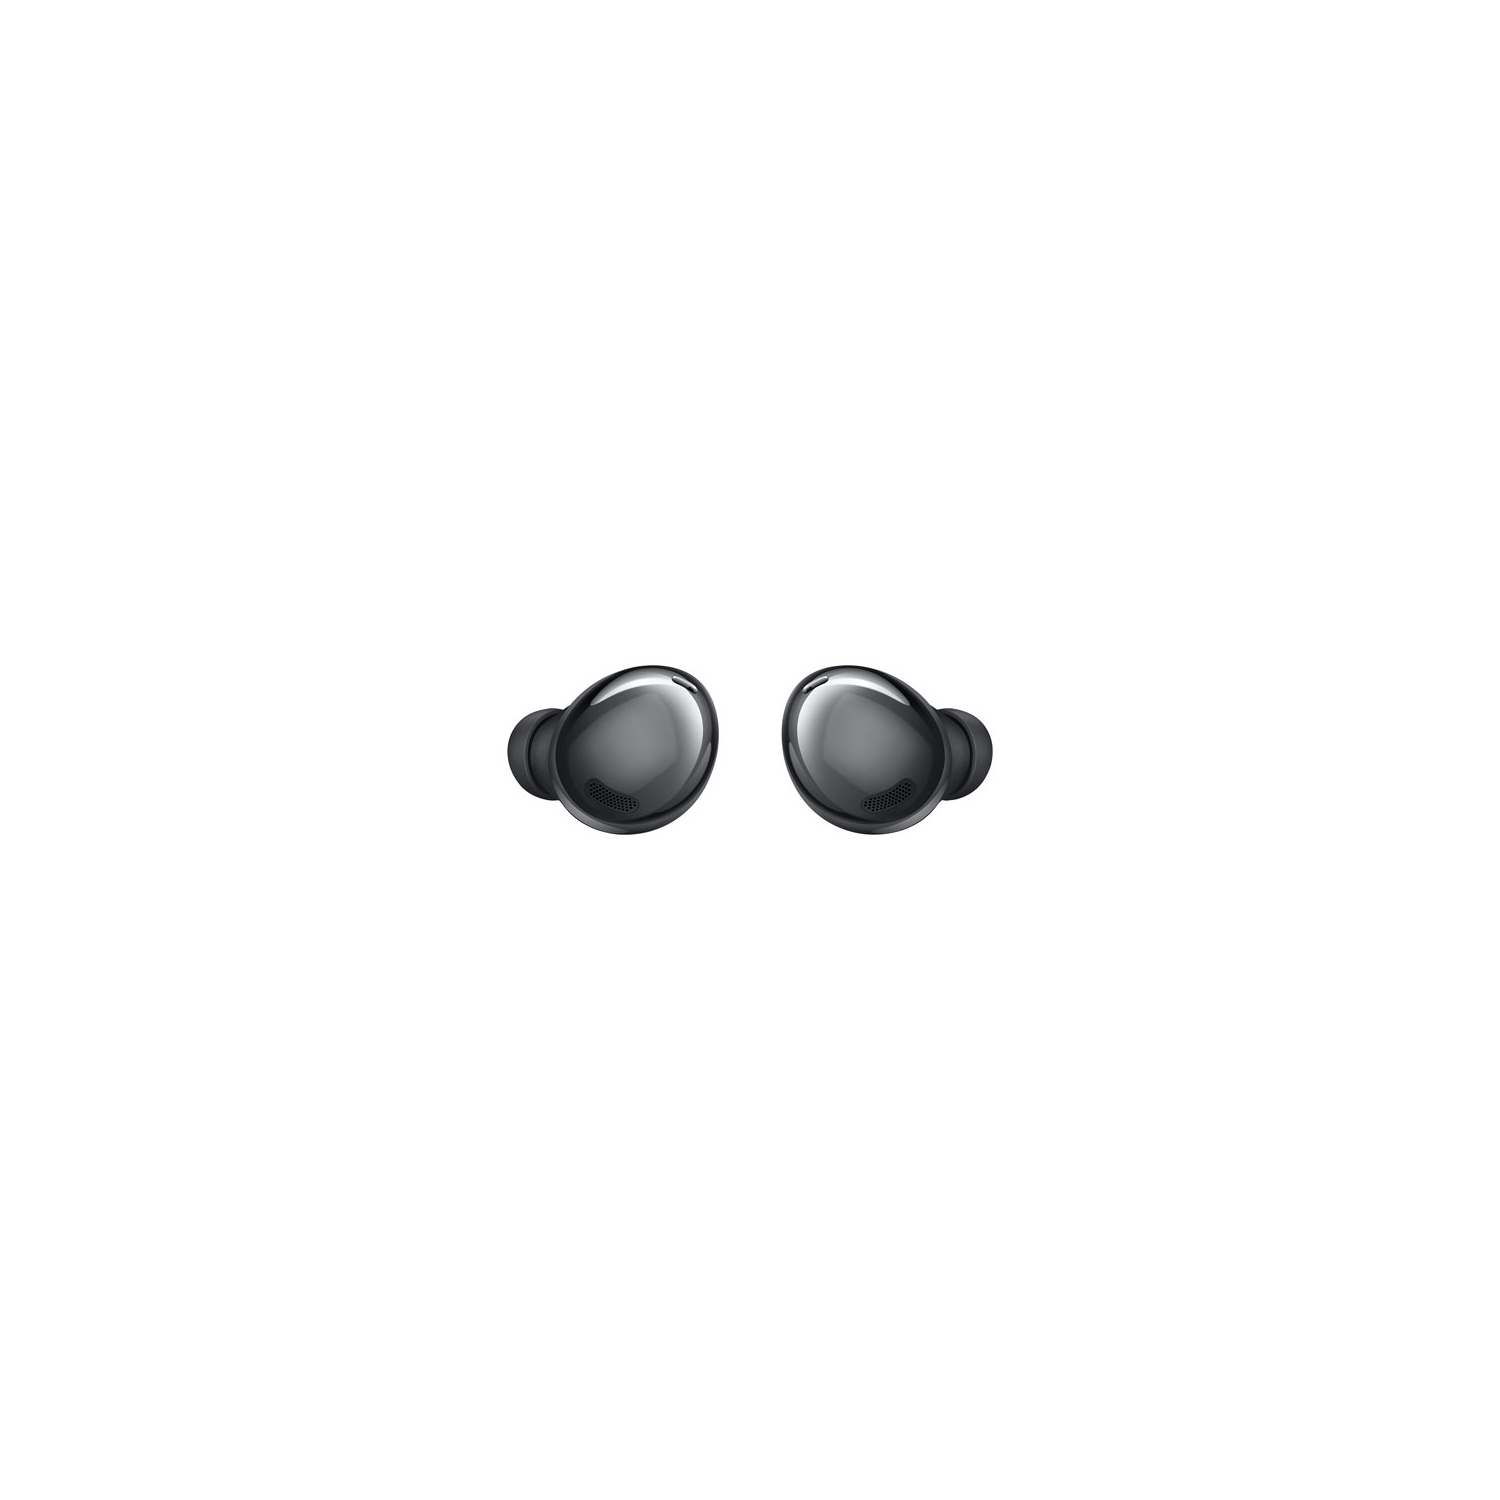 Open Box - Samsung Galaxy Buds Pro In-Ear Noise Cancelling True Wireless Earbuds - Phantom Black